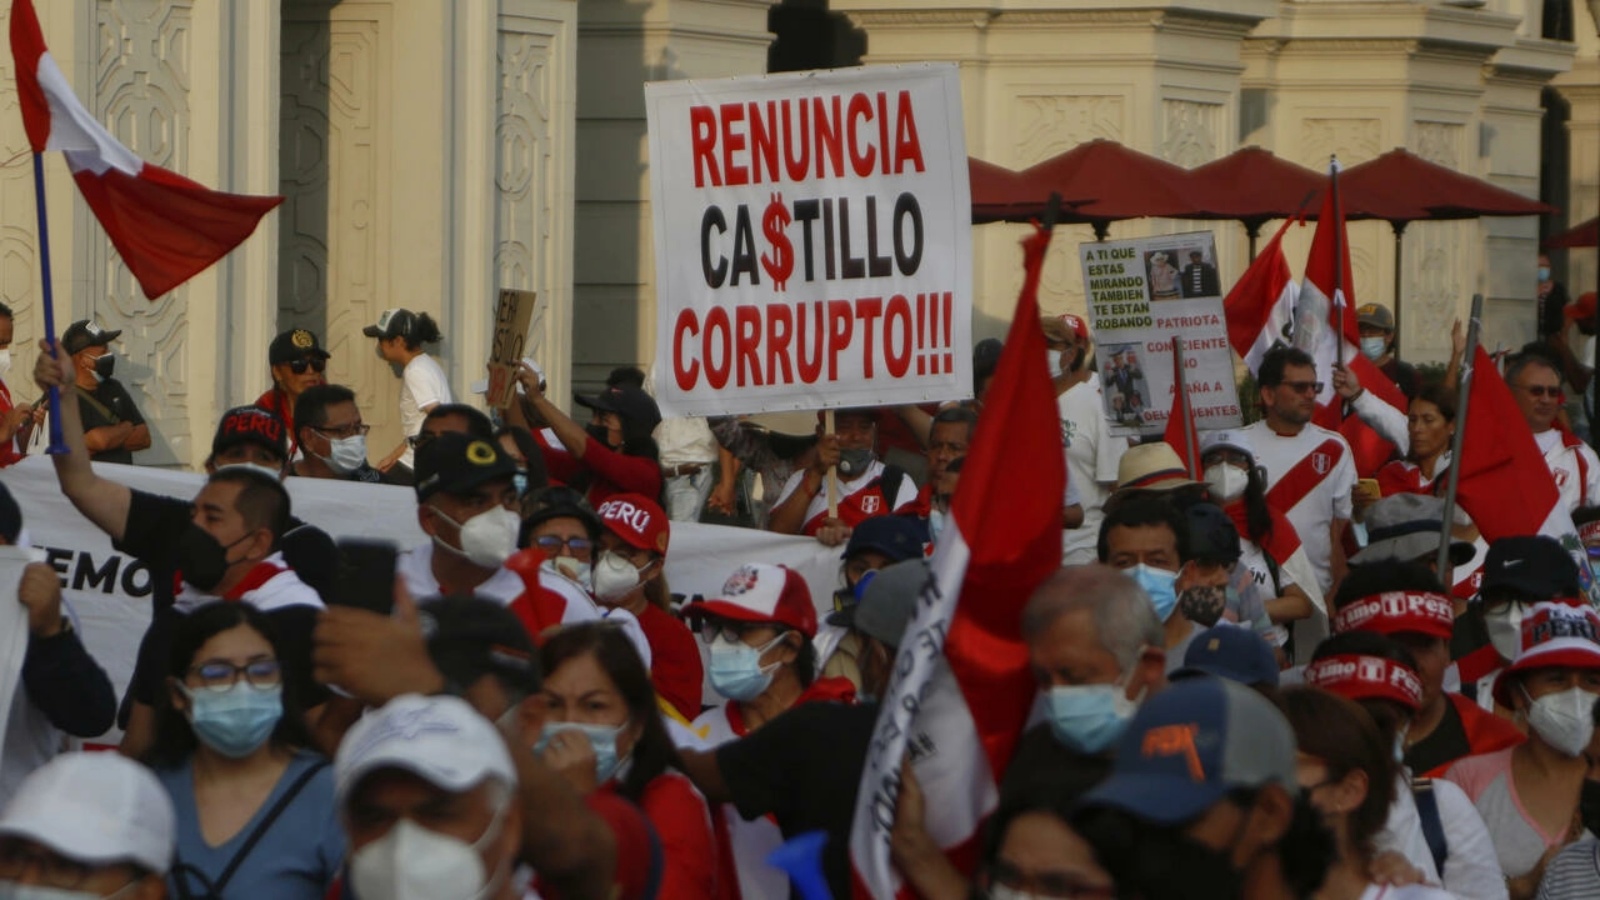 متظاهرون للمطالبة باستقالة الرئيس اليساري بيدرو كاستيو في البيرو في 09 أبريل 2022 في العاصمة ليما 